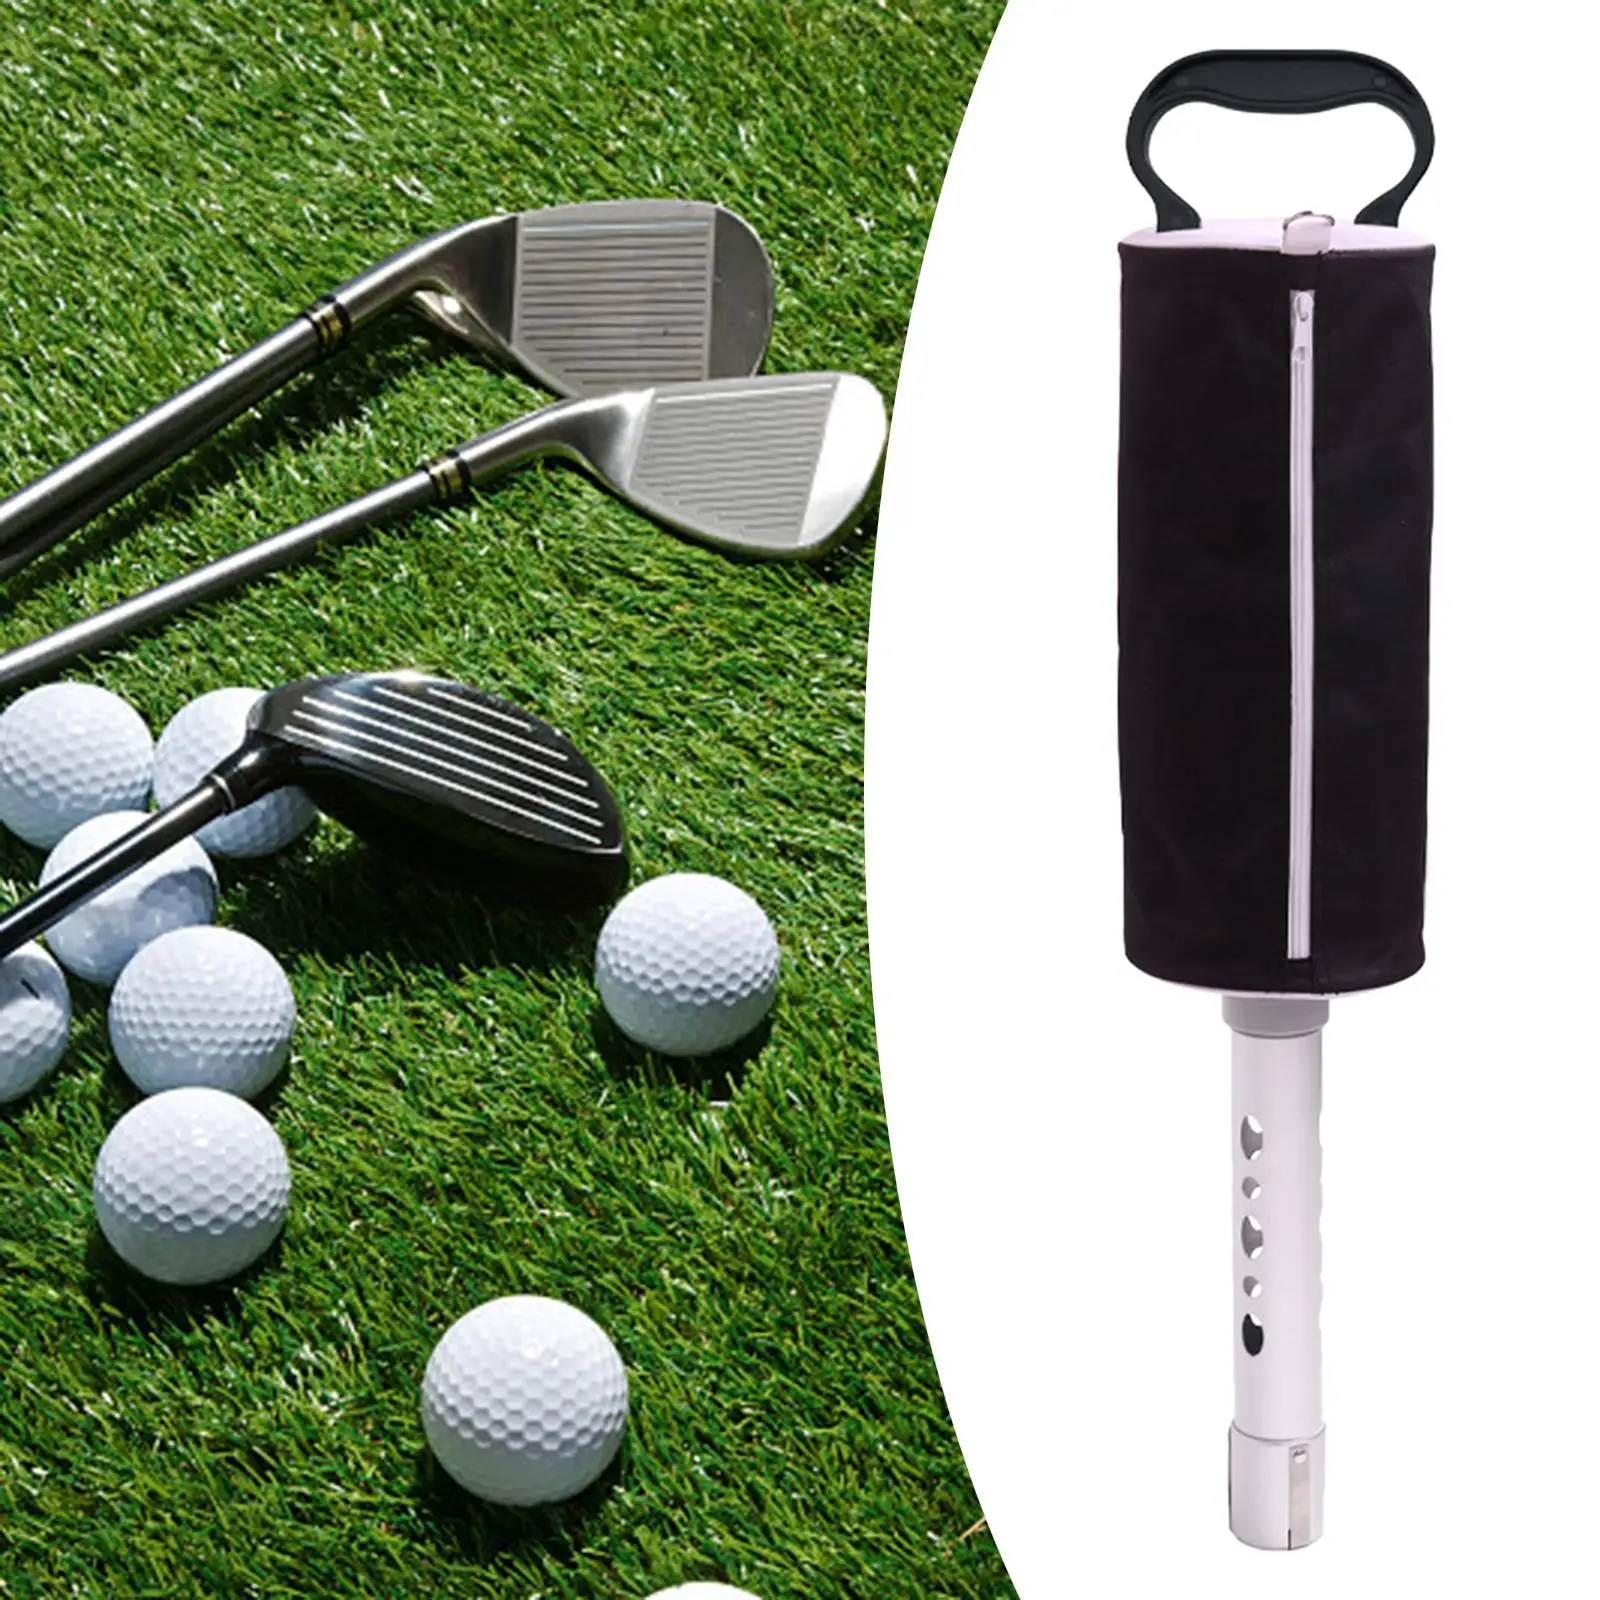 Golf Ball Pick up Portable Balls Grabber Golf Ball Retriever